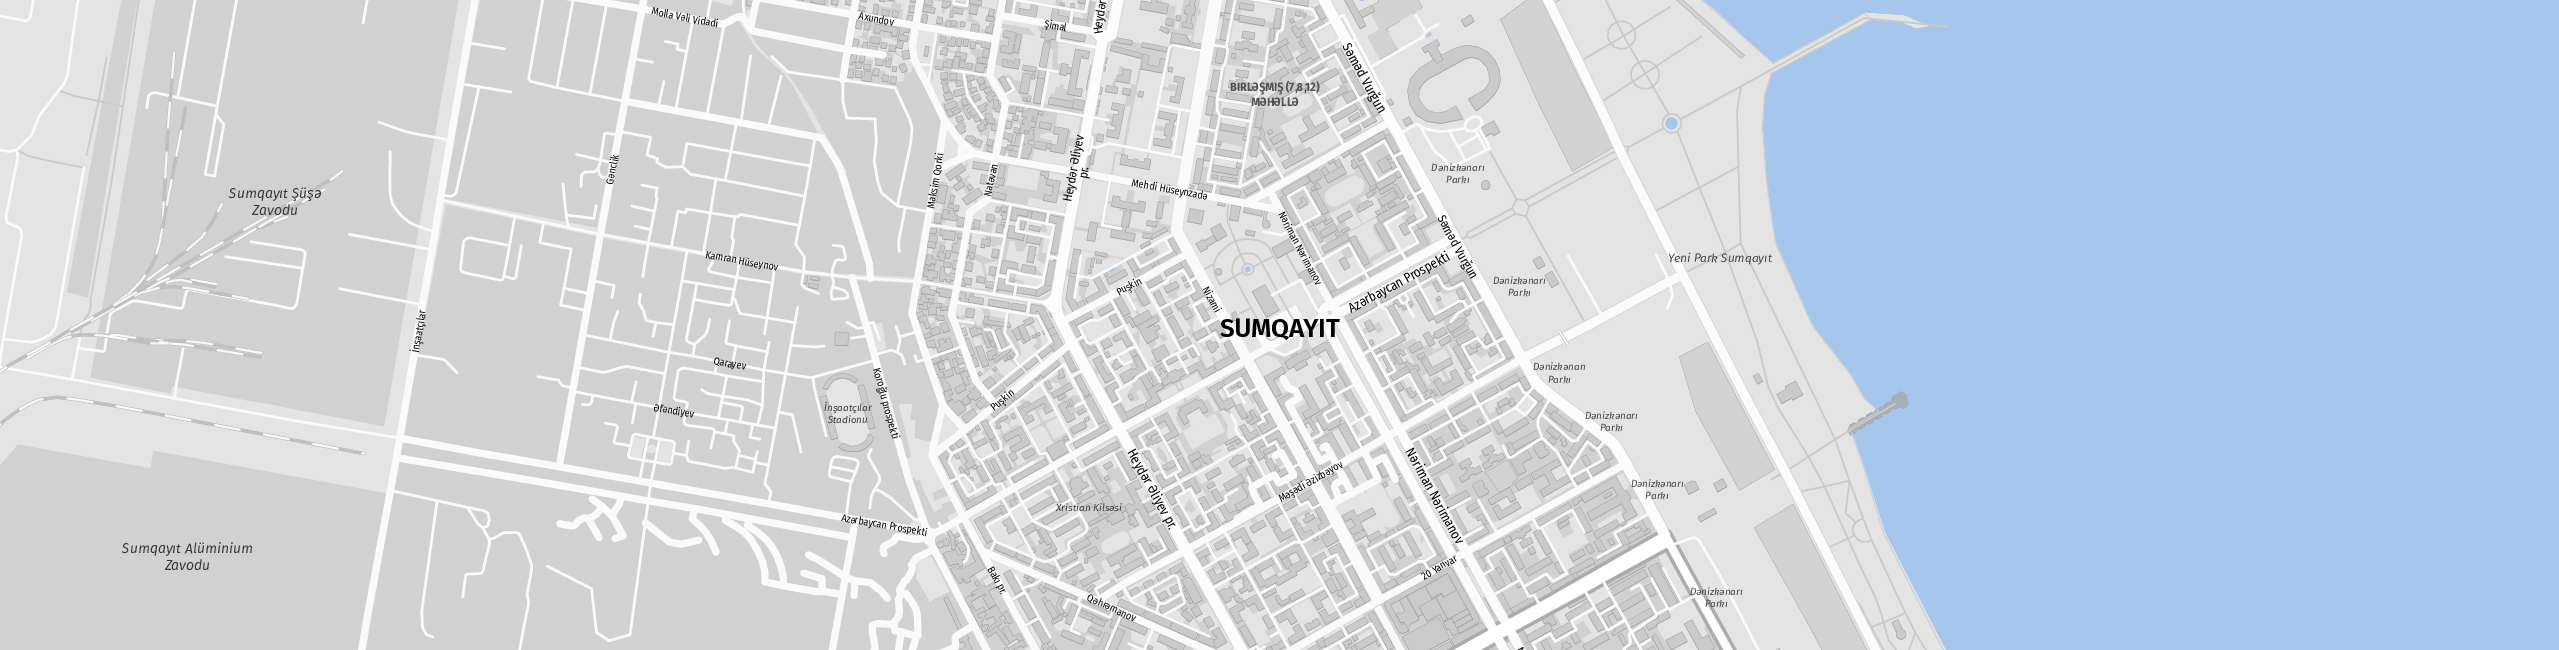 Stadtplan Sumqayit zum Downloaden.